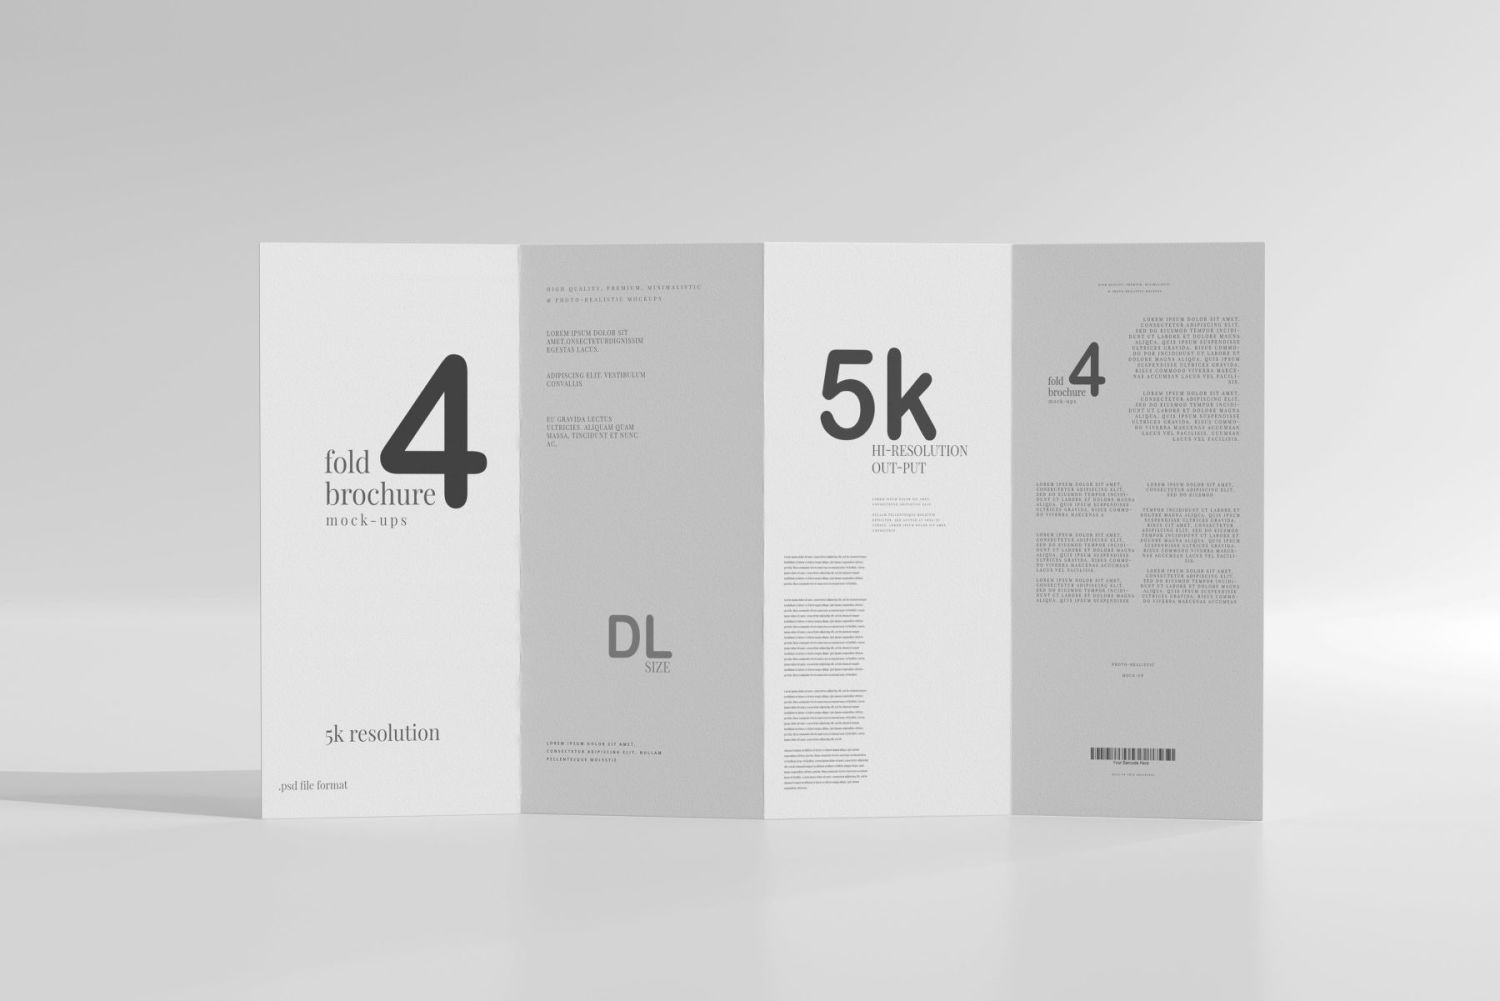 DL尺寸四折宣传册样机 Four Fold DL Brochure Mockups插图31